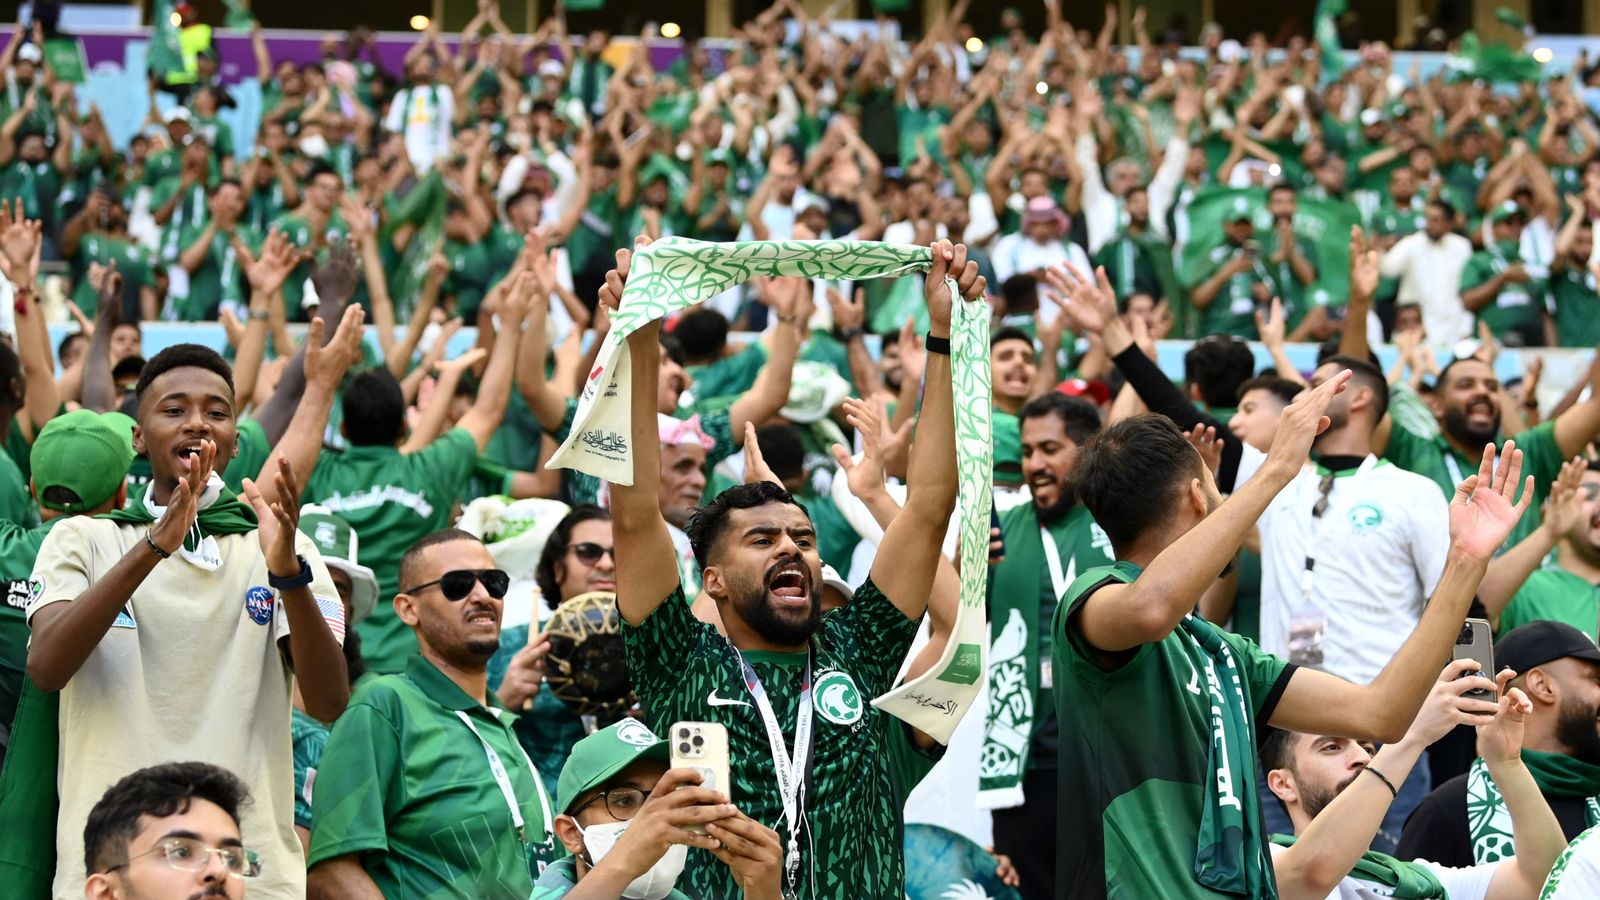 كأس العالم: إجبار المملكة العربية السعودية على بيع البيرة إذا فازت بعرض عام 2030 “سيكون معاديًا للإسلام” ، حسب الوزير |  اخبار العالم